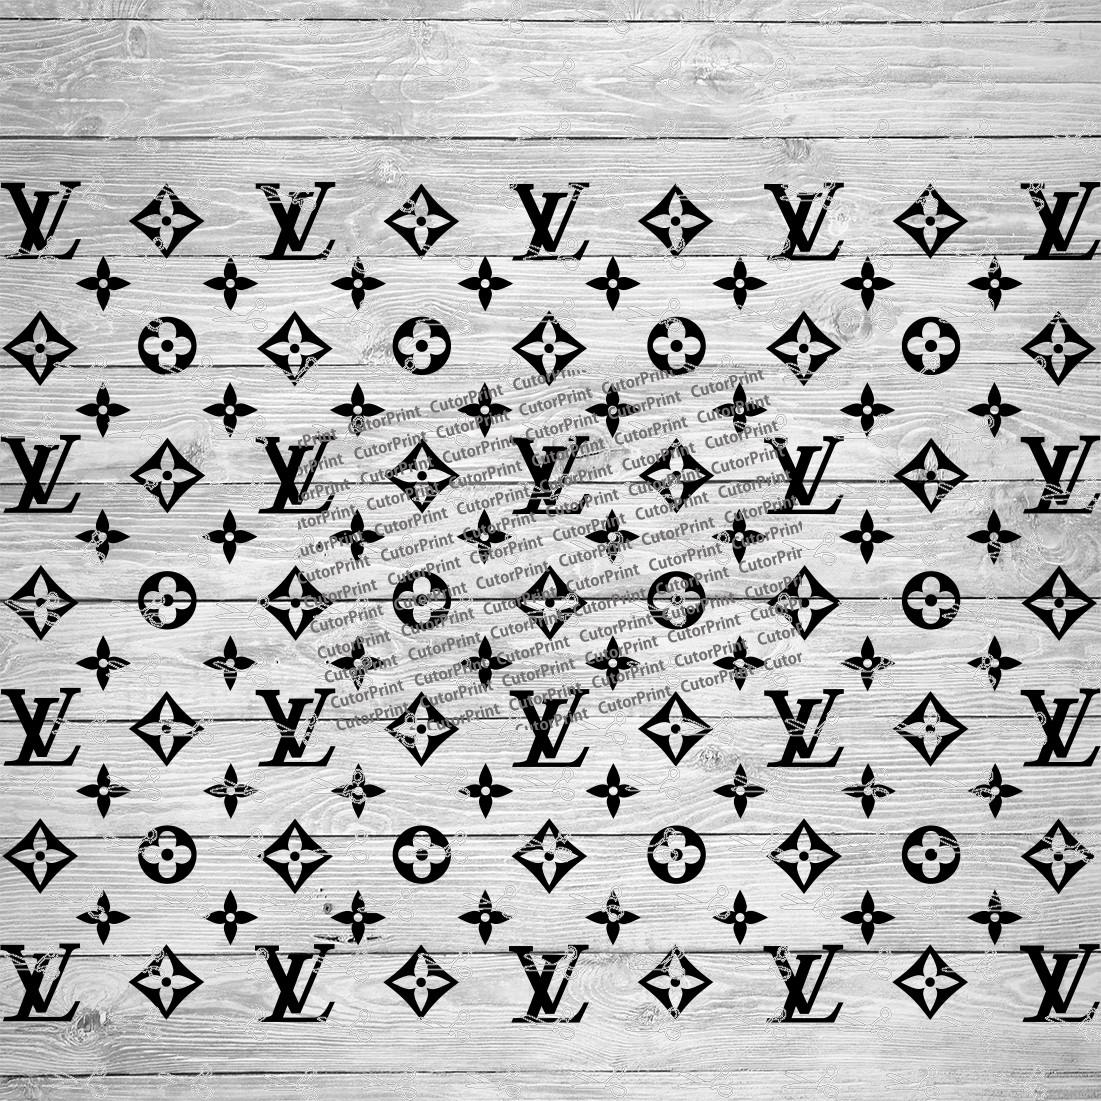 11 Louis Vuitton Pattern Svg Designs & Graphics